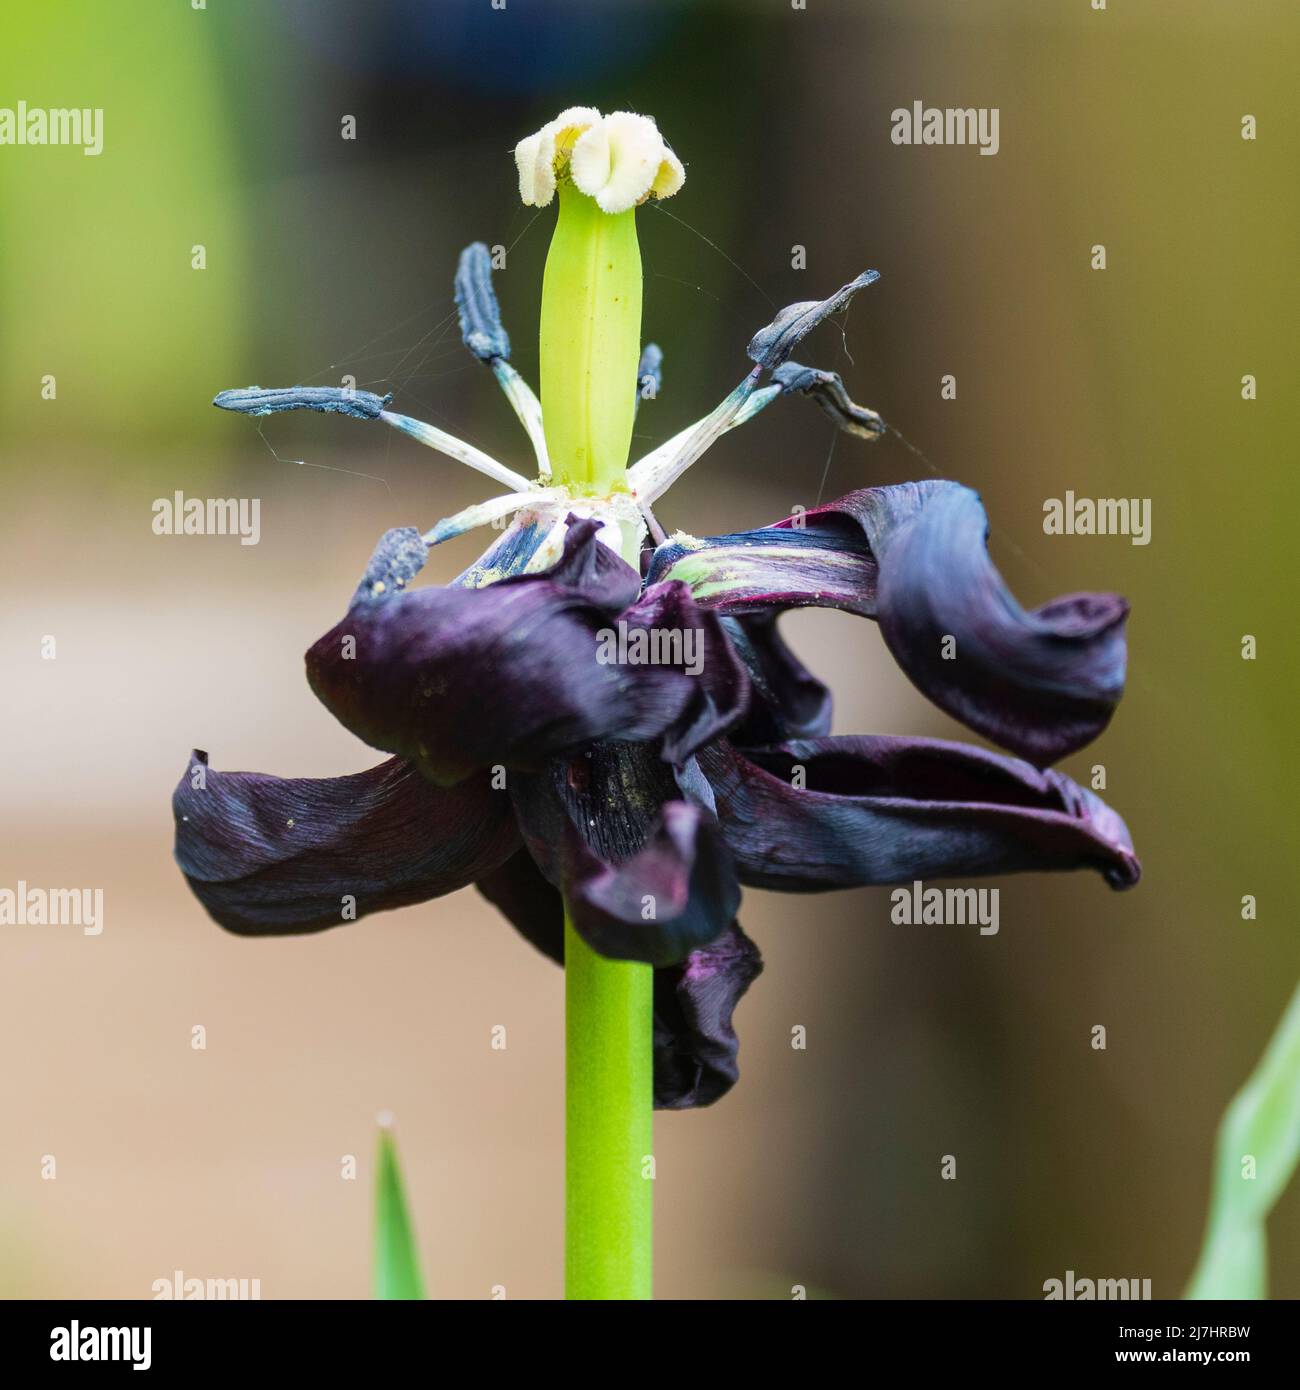 Herabfallende Blütenblätter der Tulpenkönigin der Nacht, die Staubgefäße und Antheren freilegt, wenn die Blume stirbt Stockfoto